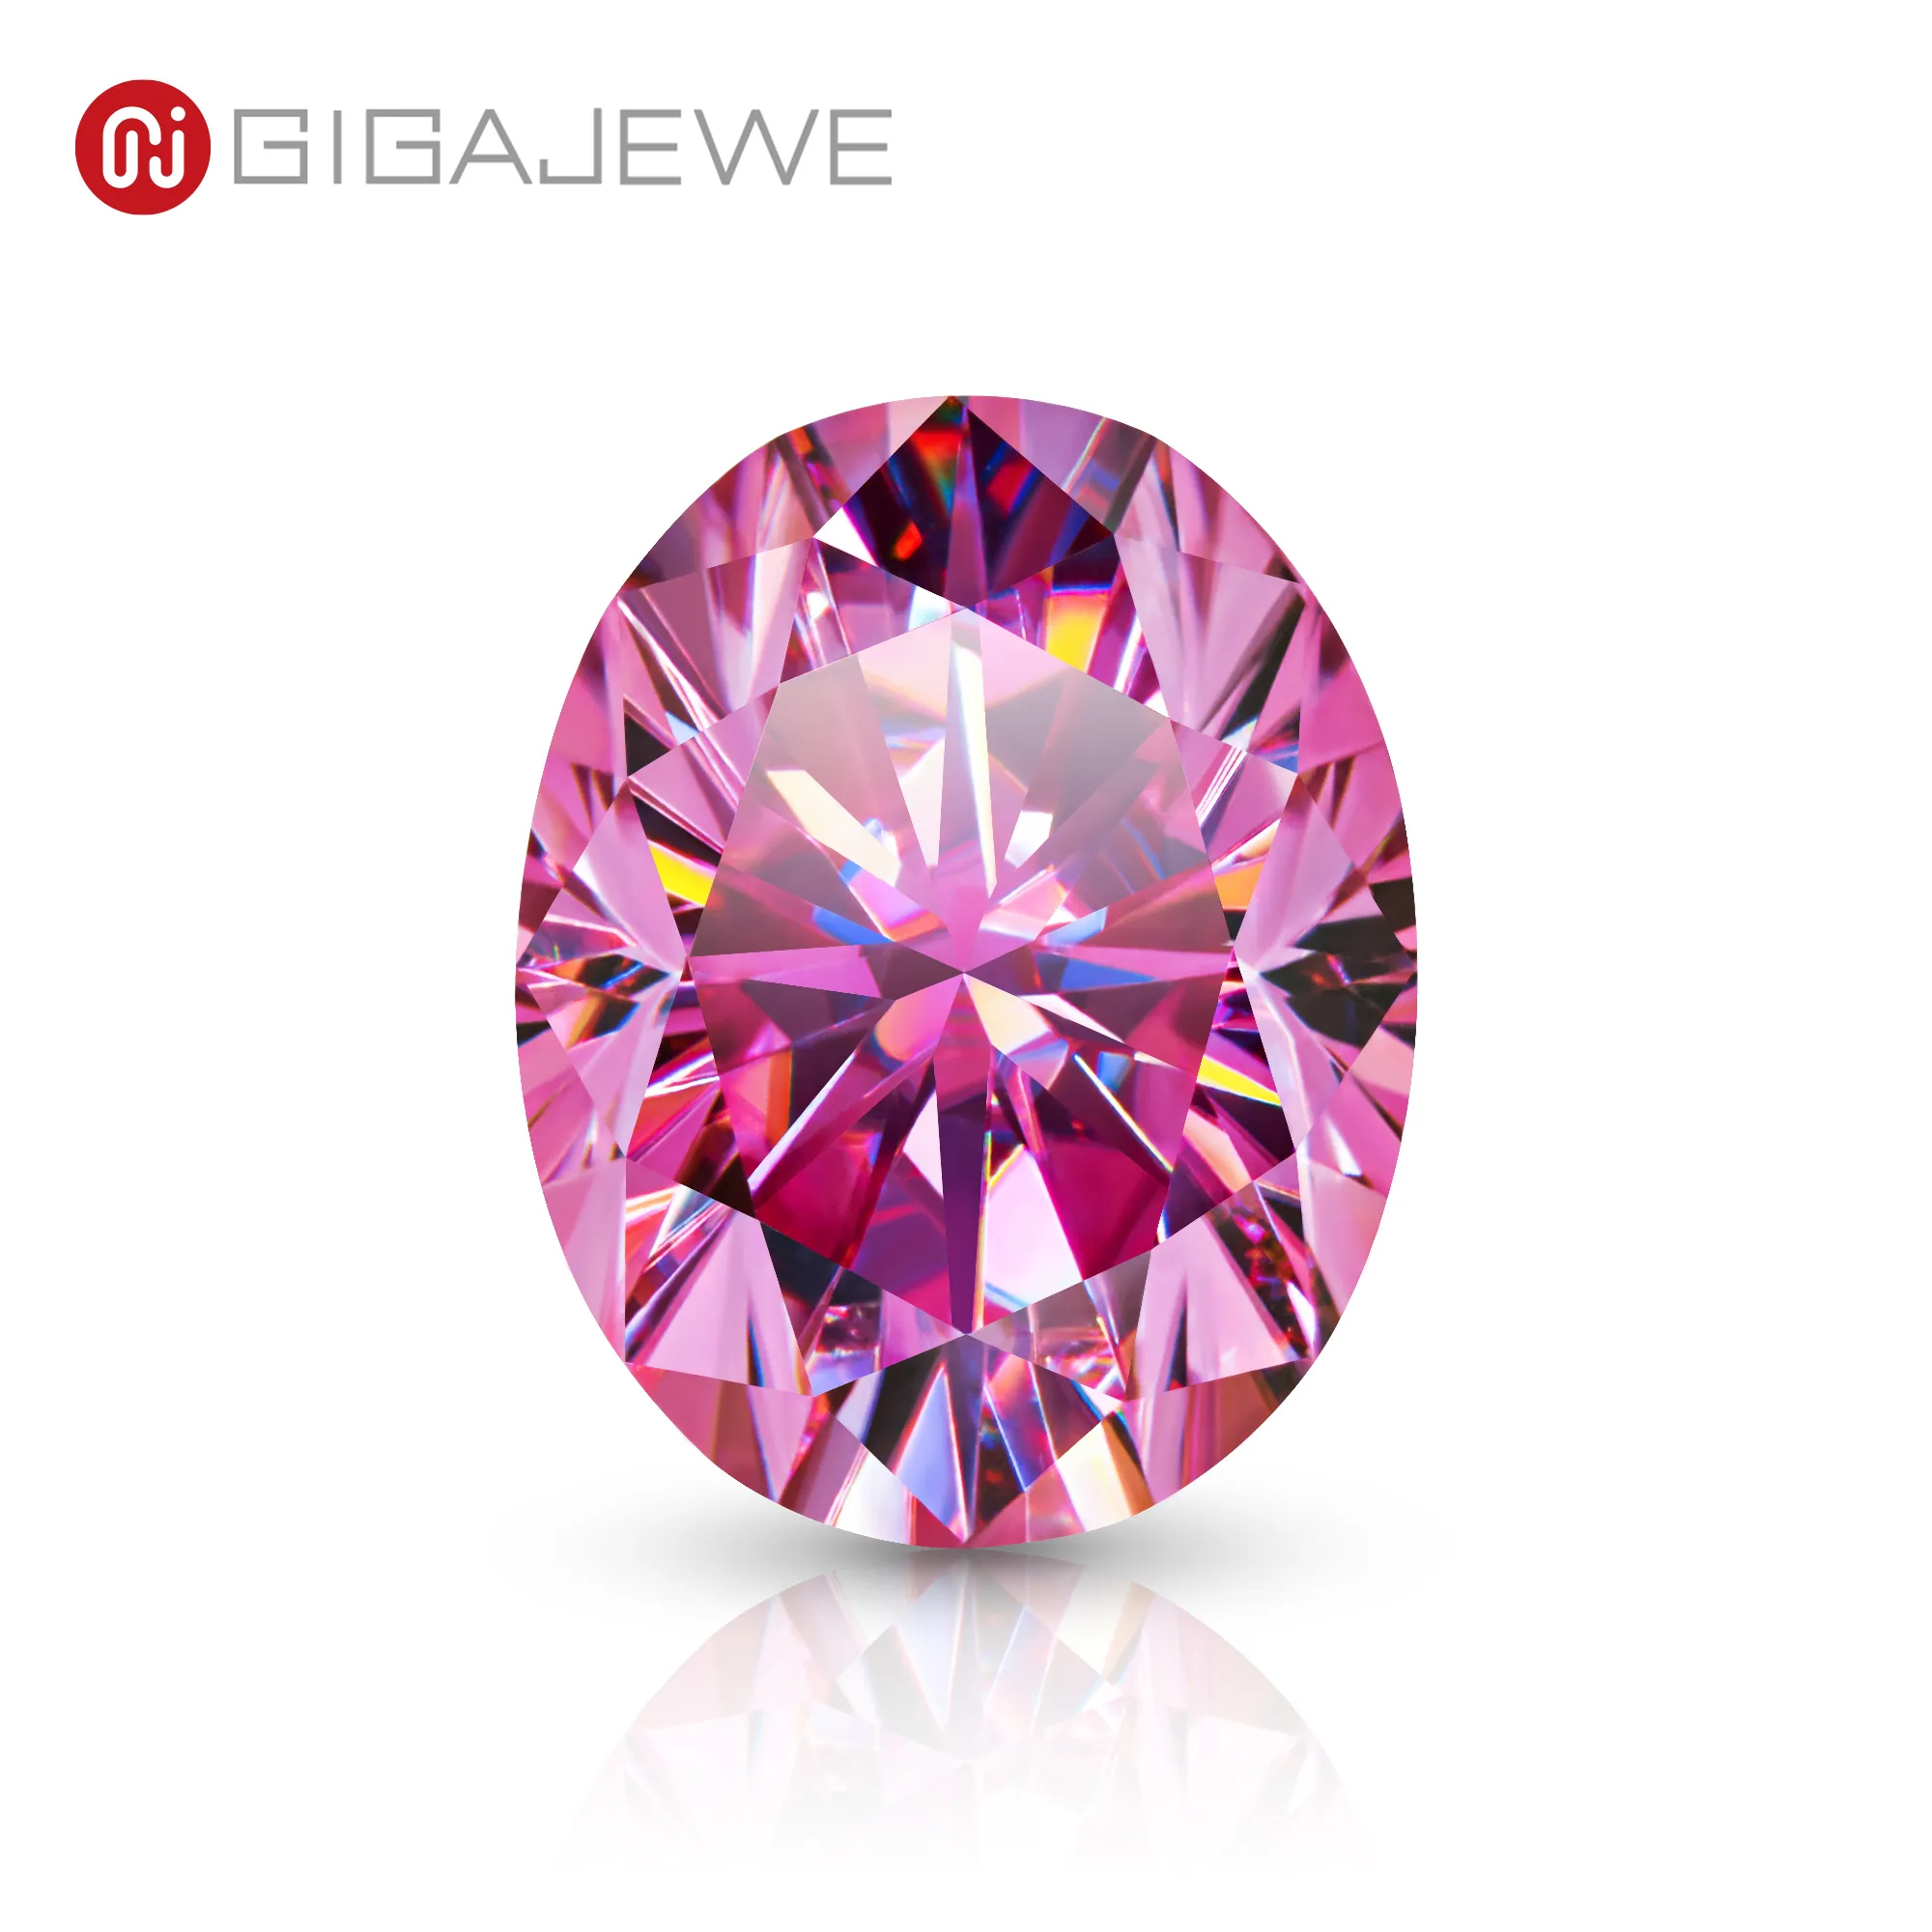 Gigajewe rosa färg oval cut vvs1 moissanit diamant 5x7mm-10x14mm för smycken gör